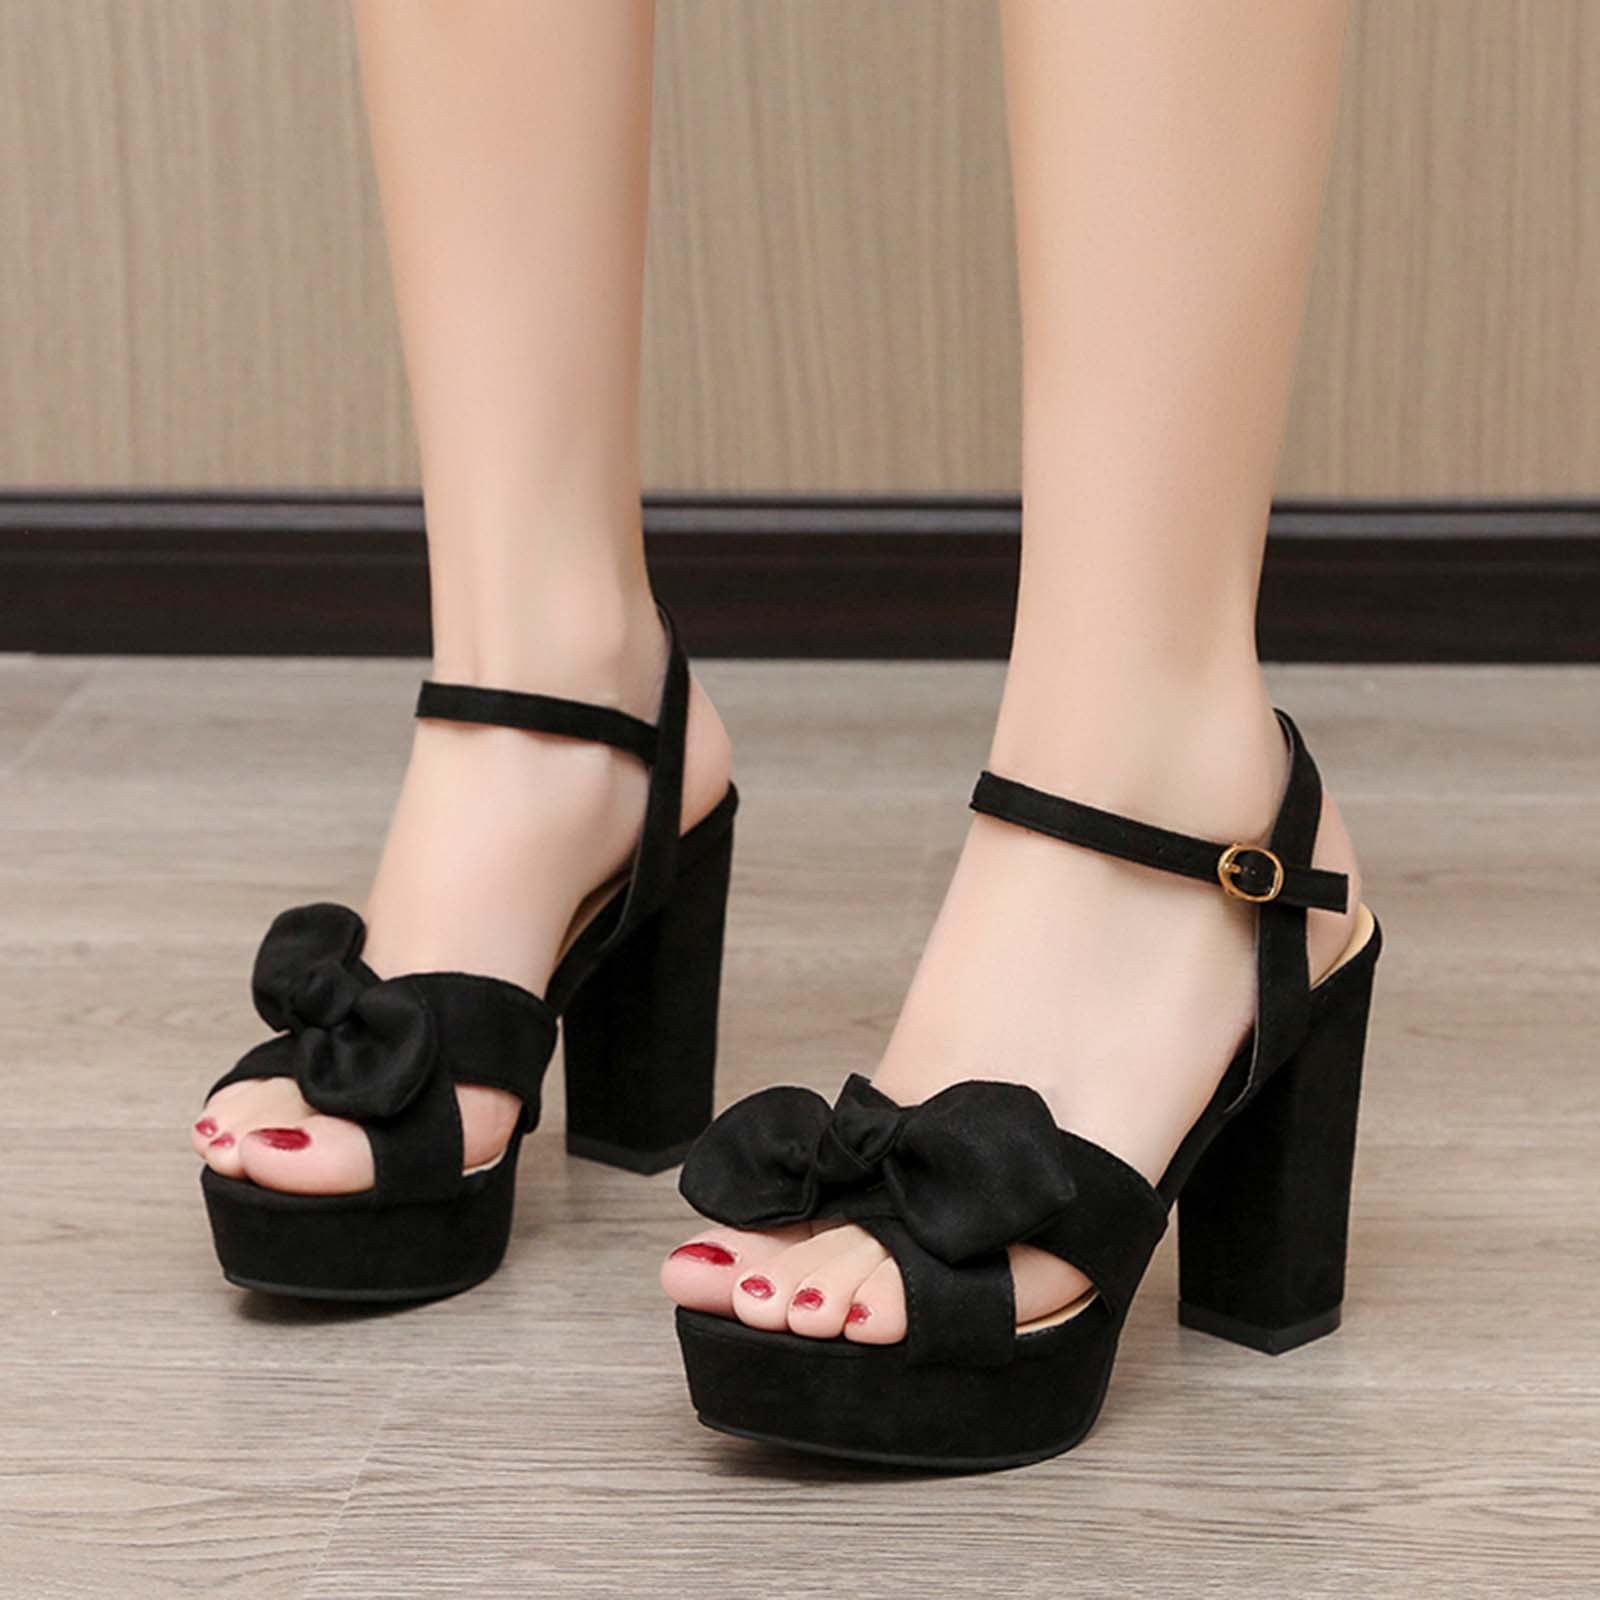 mix #6 high heels size 7 black Suede | eBay